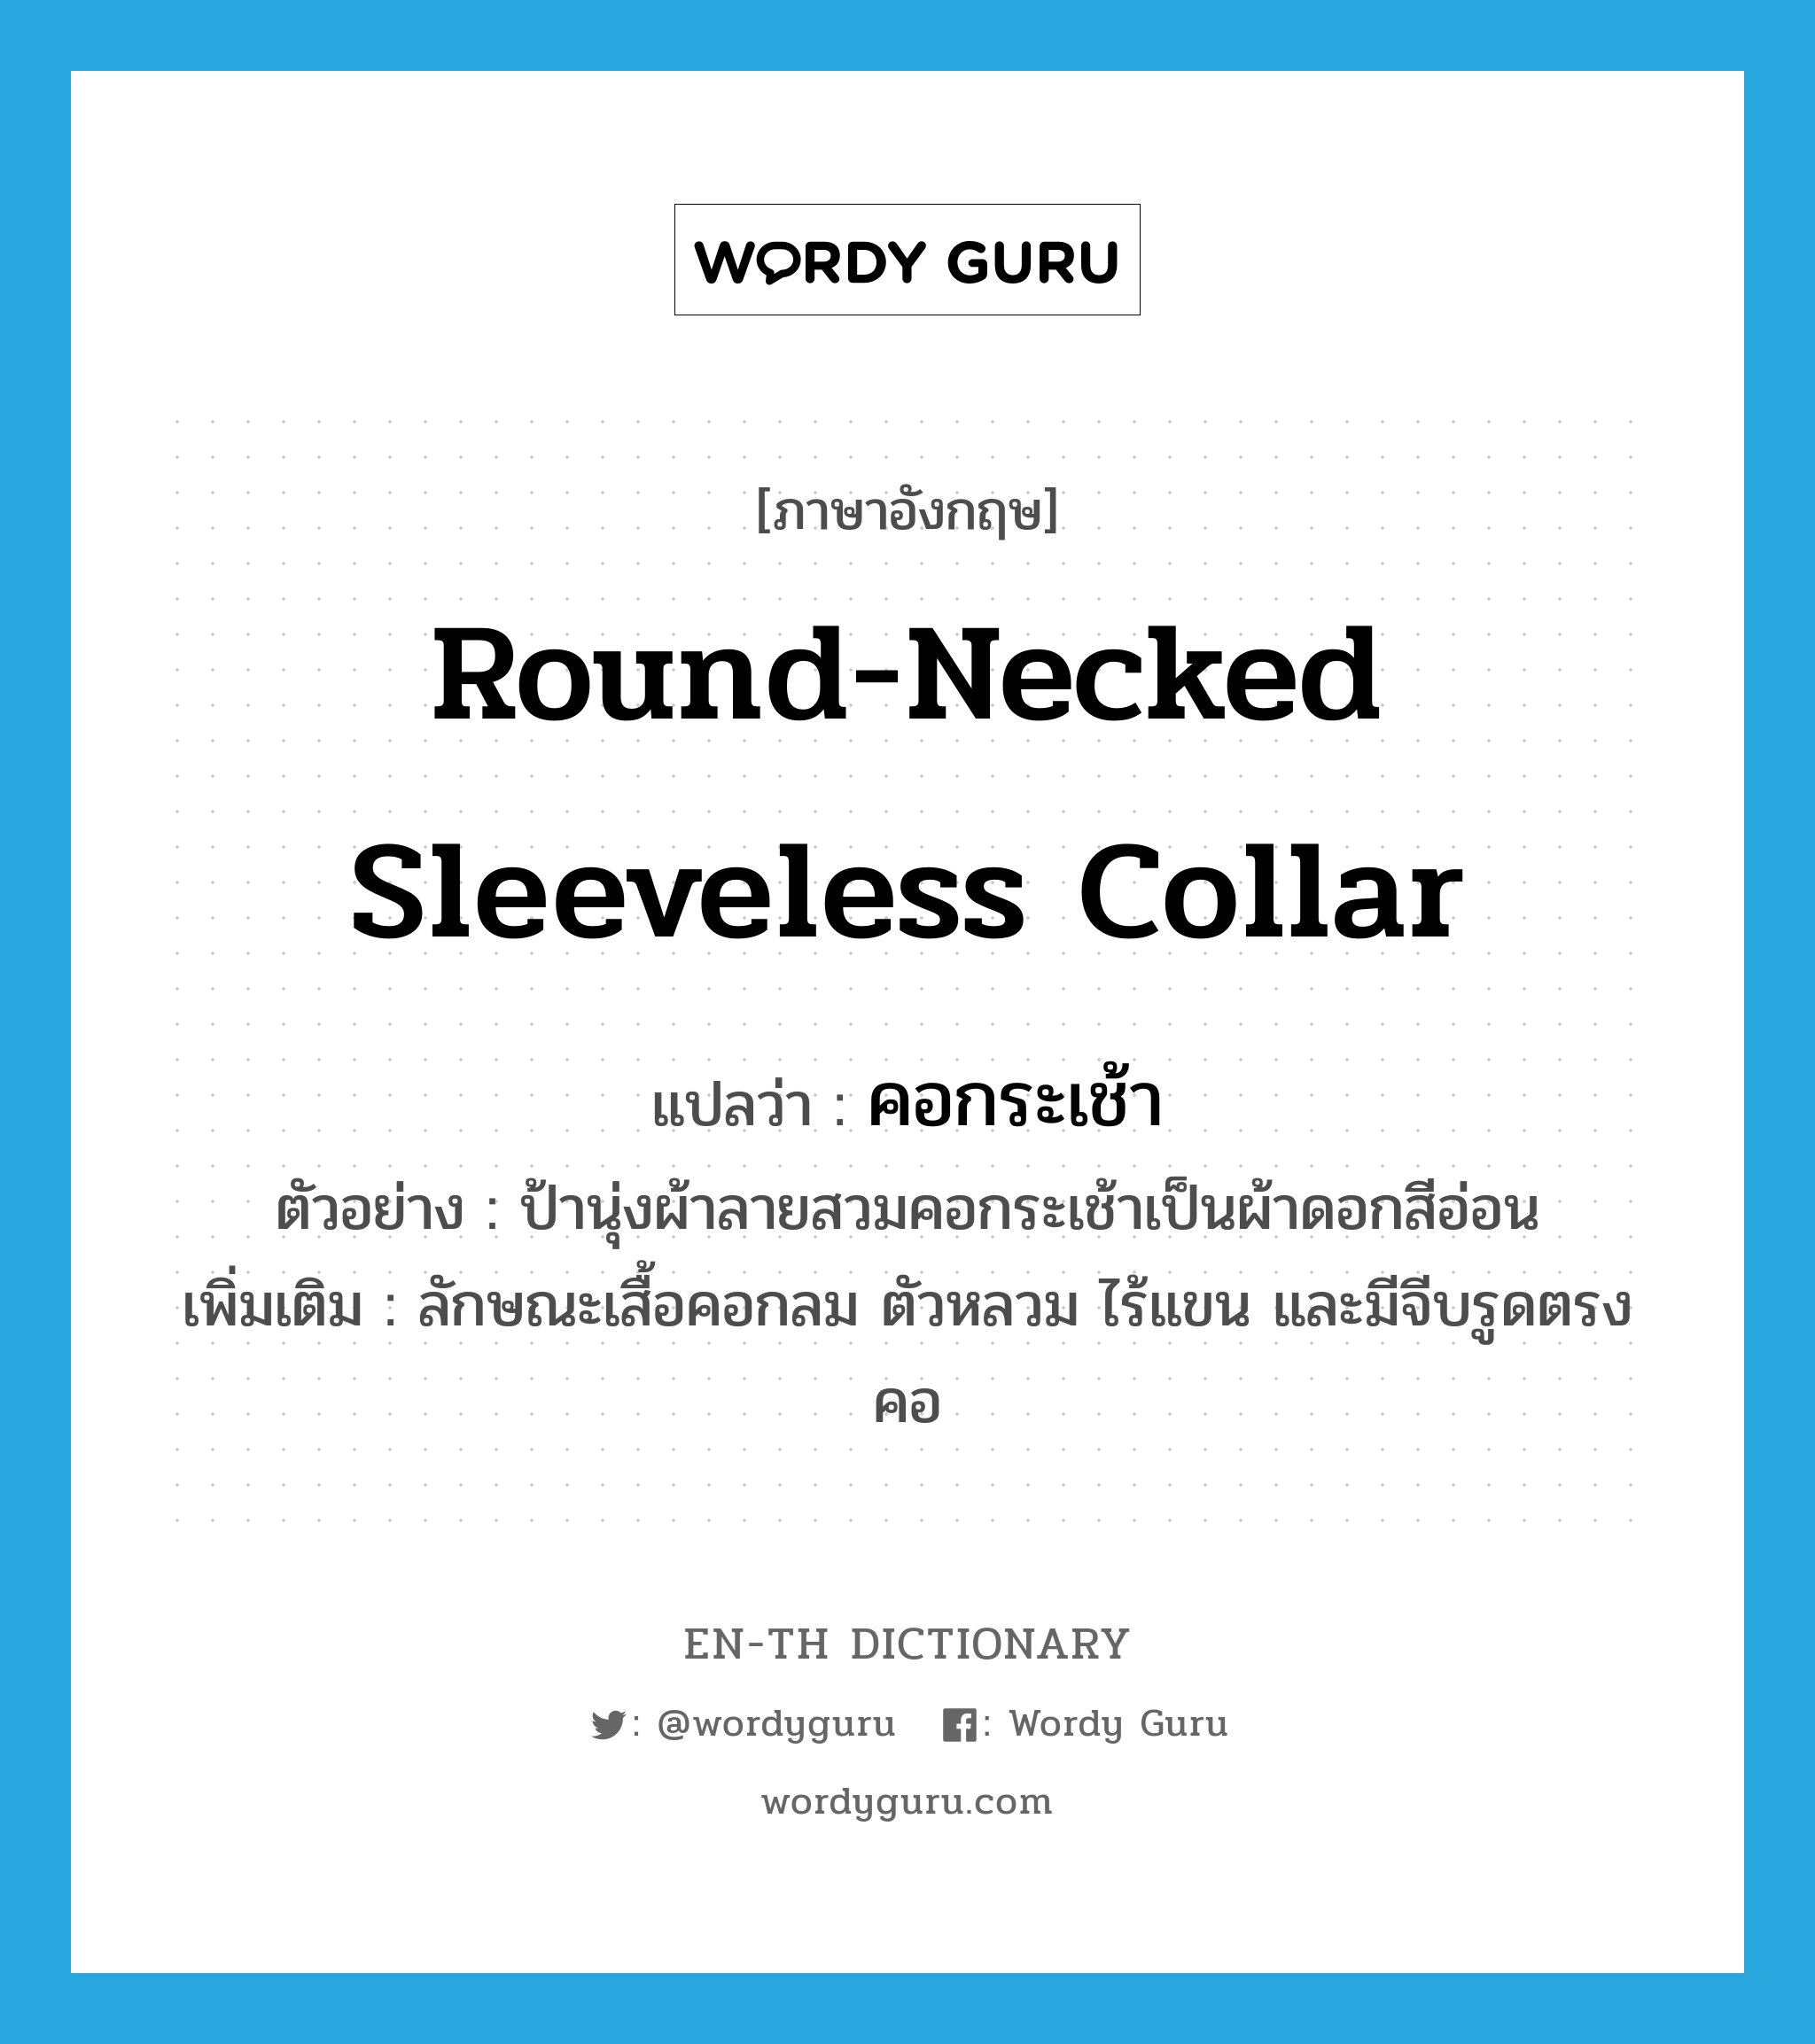 round-necked sleeveless collar แปลว่า?, คำศัพท์ภาษาอังกฤษ round-necked sleeveless collar แปลว่า คอกระเช้า ประเภท N ตัวอย่าง ป้านุ่งผ้าลายสวมคอกระเช้าเป็นผ้าดอกสีอ่อน เพิ่มเติม ลักษณะเสื้อคอกลม ตัวหลวม ไร้แขน และมีจีบรูดตรงคอ หมวด N